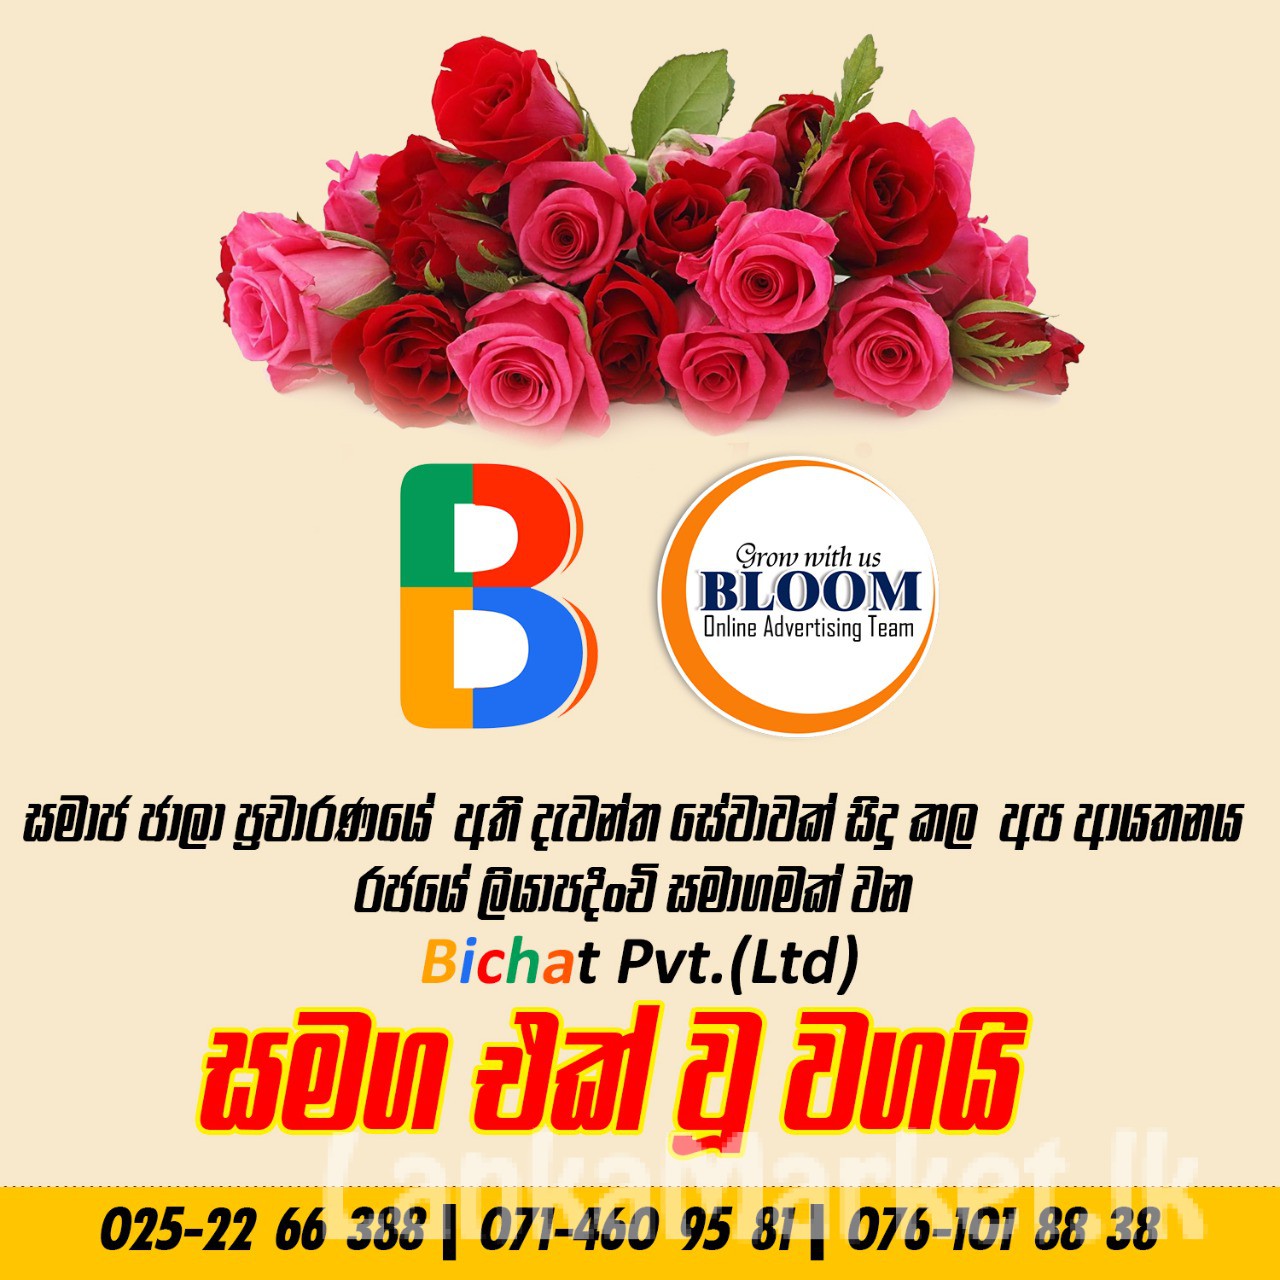 Bloom ads social media advertiesments